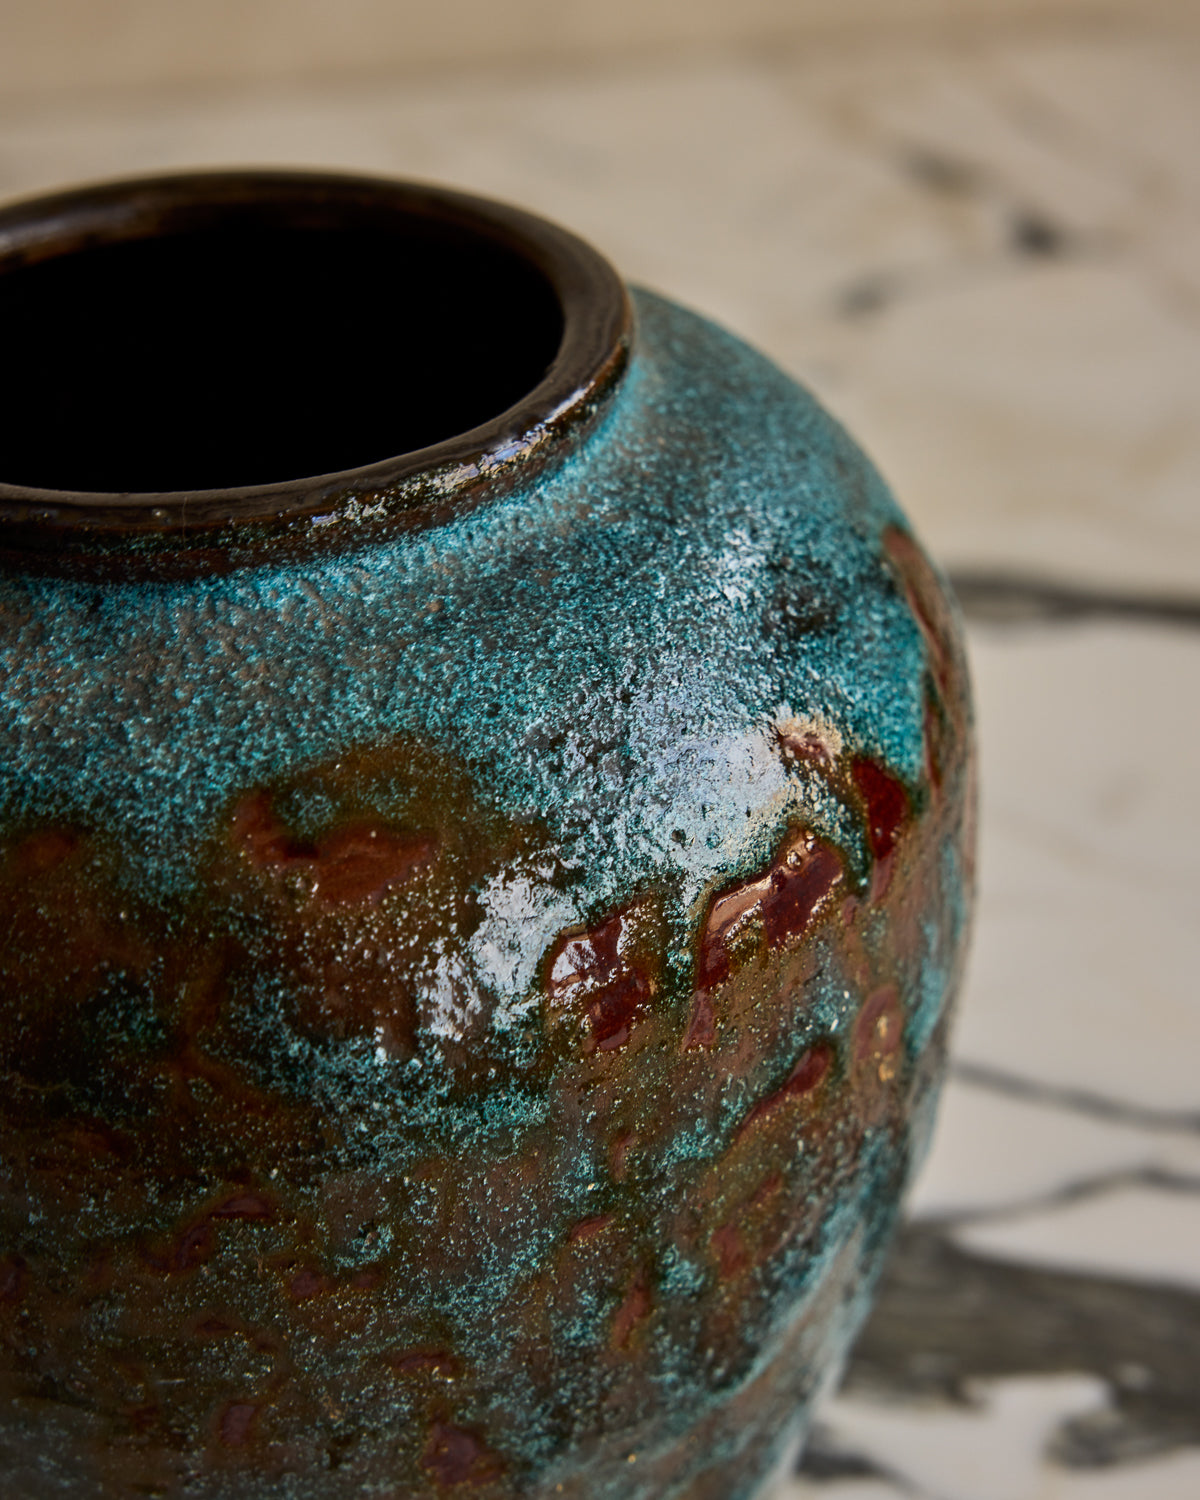 Dutch Turquoise + Umber Vase